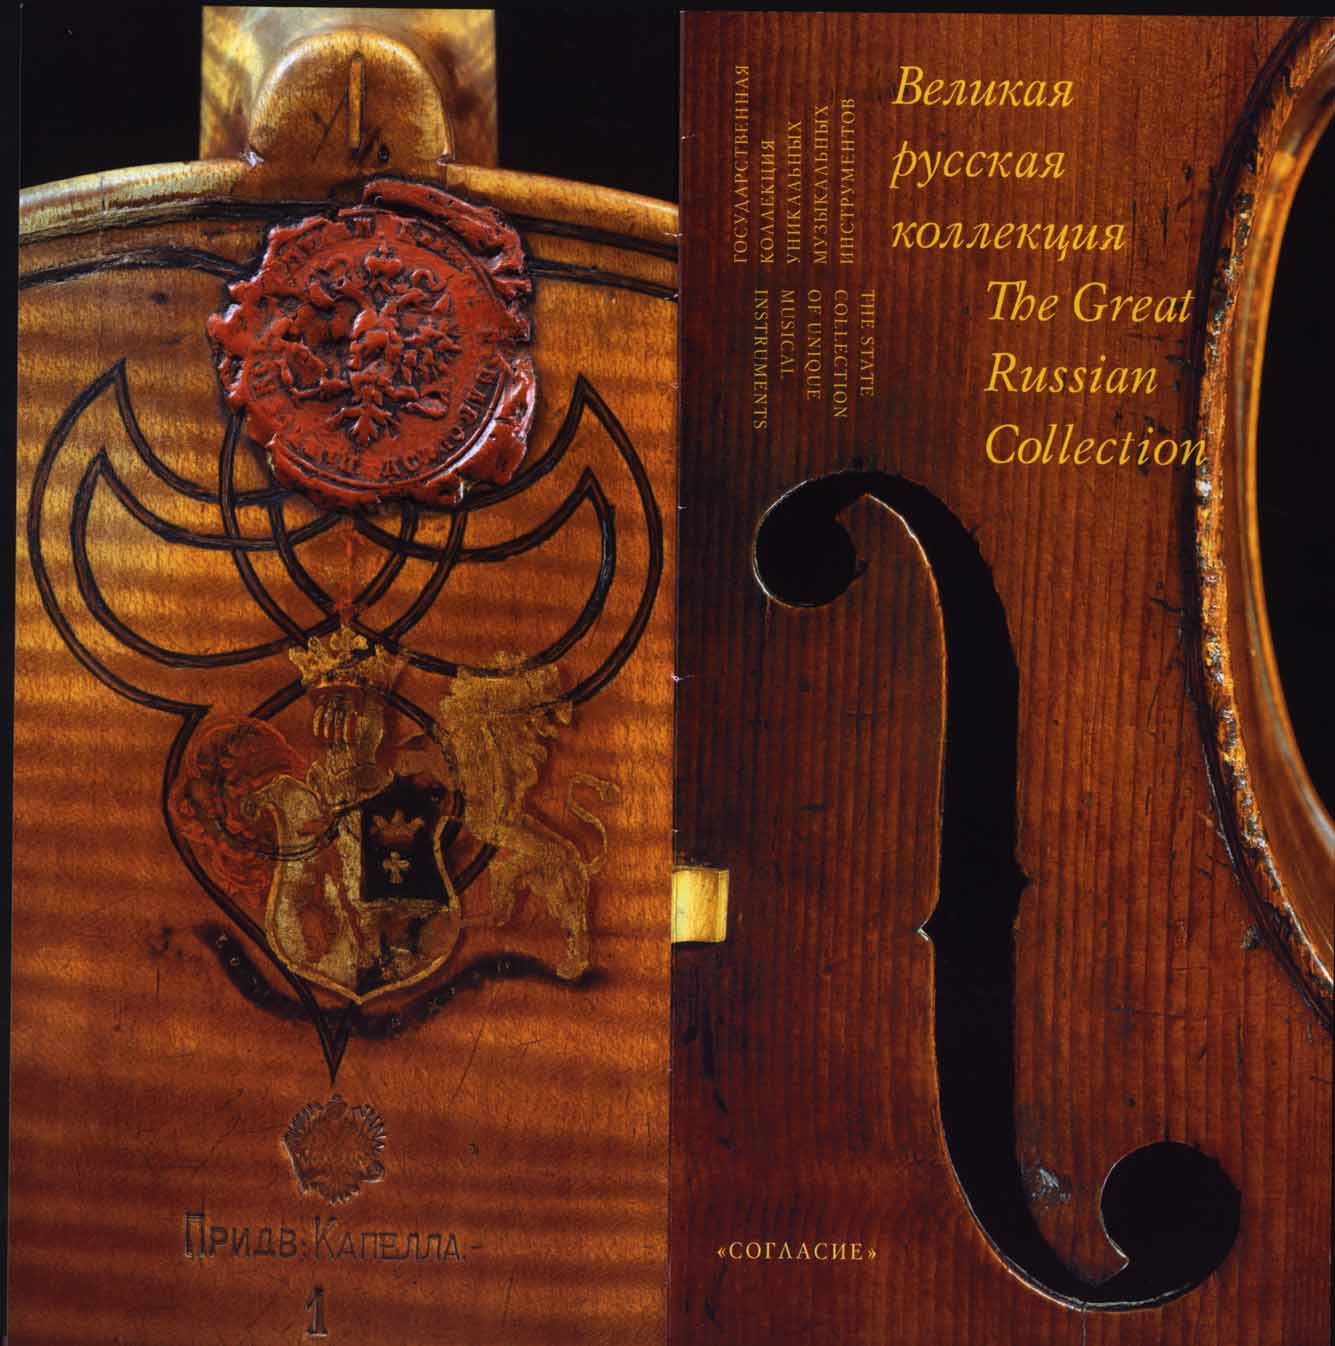 Государственная коллекция уникальных музыкальных инструментов - Великая русская коллекция